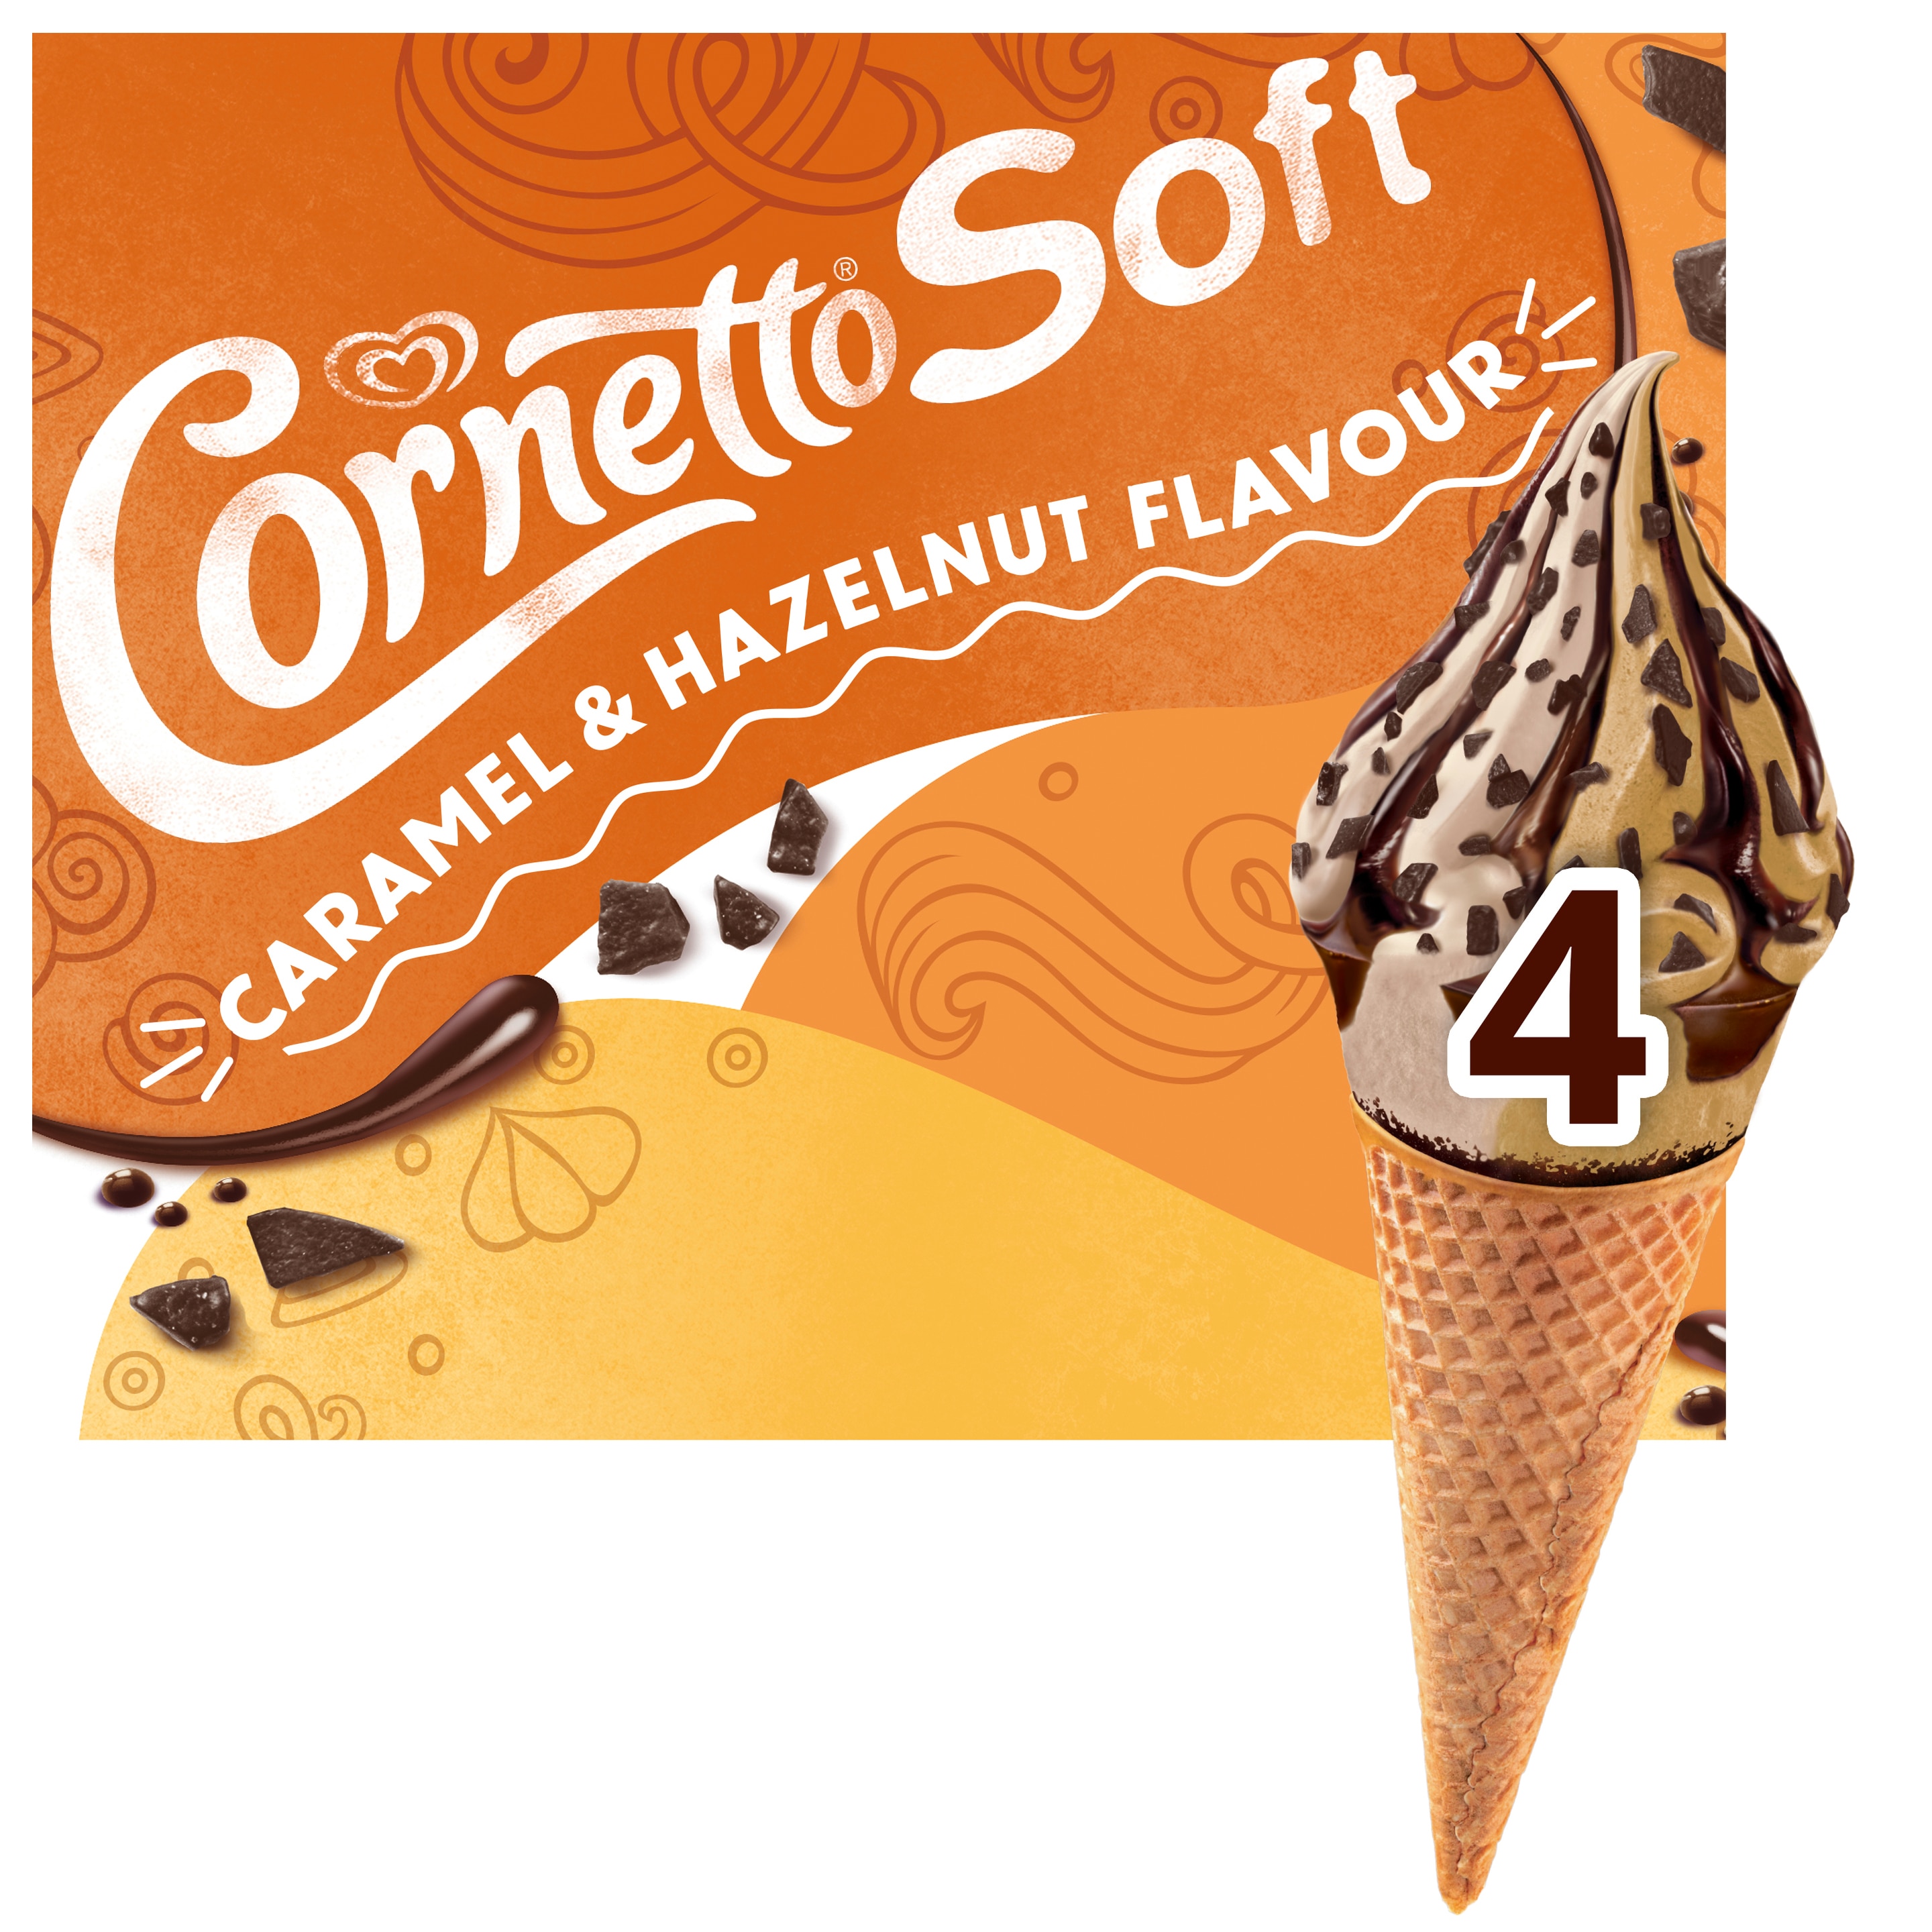 Cornetto Soft Caramel & Hazelnut Flavor 4 x 140 ml